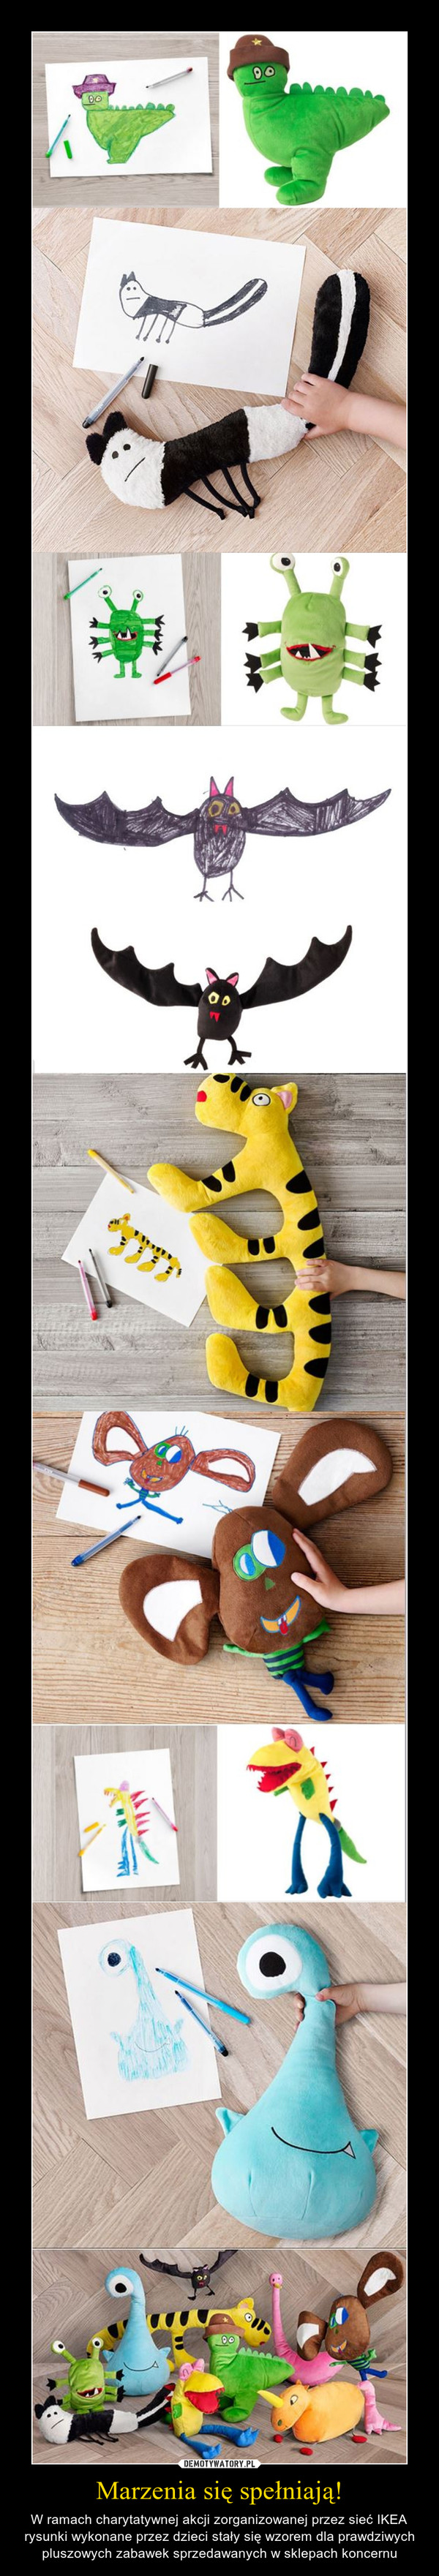 Marzenia się spełniają! – W ramach charytatywnej akcji zorganizowanej przez sieć IKEA rysunki wykonane przez dzieci stały się wzorem dla prawdziwych pluszowych zabawek sprzedawanych w sklepach koncernu 